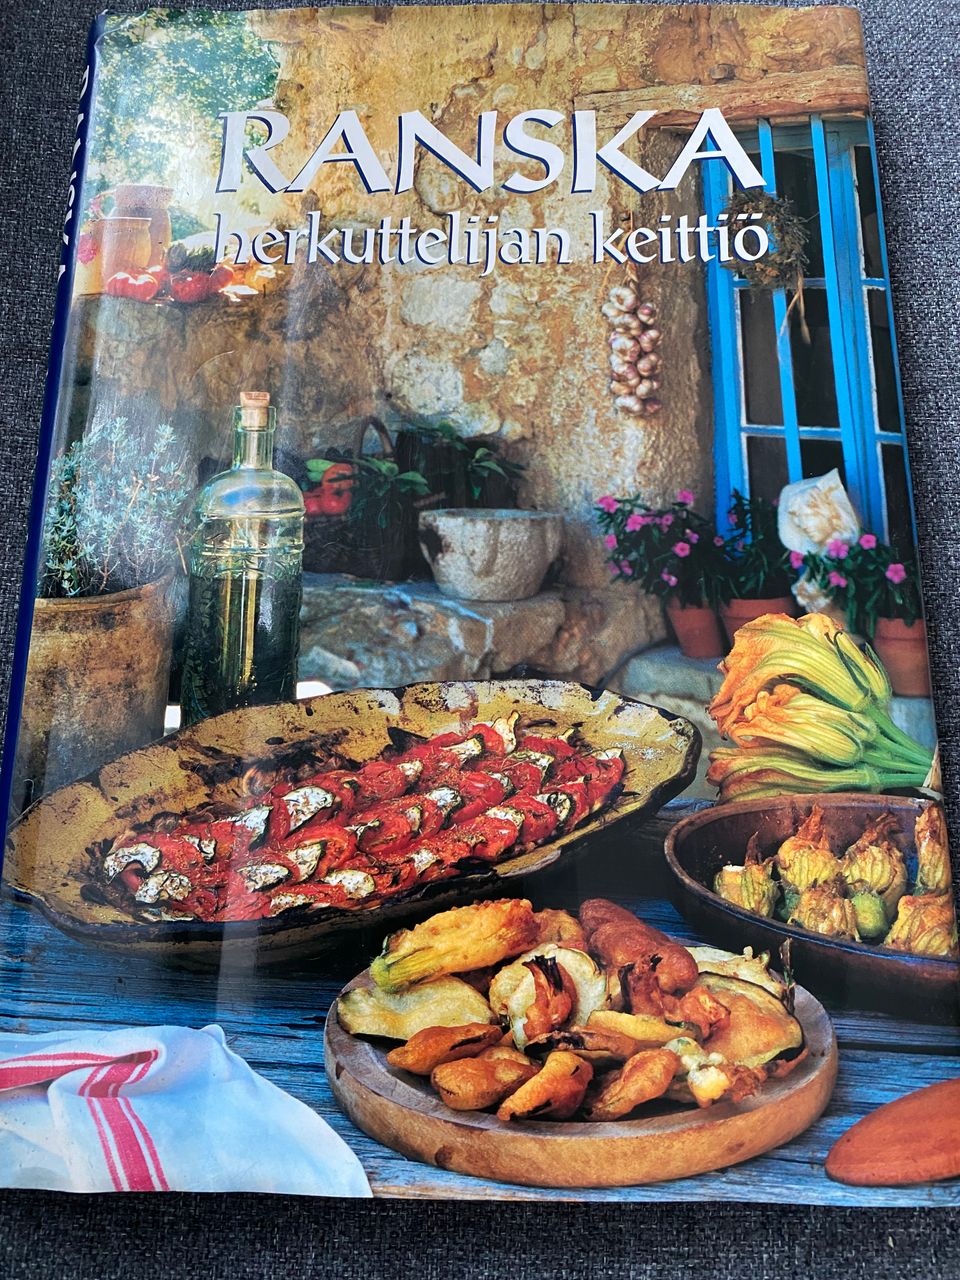 Ranska herkuttelijan keittiö kirja